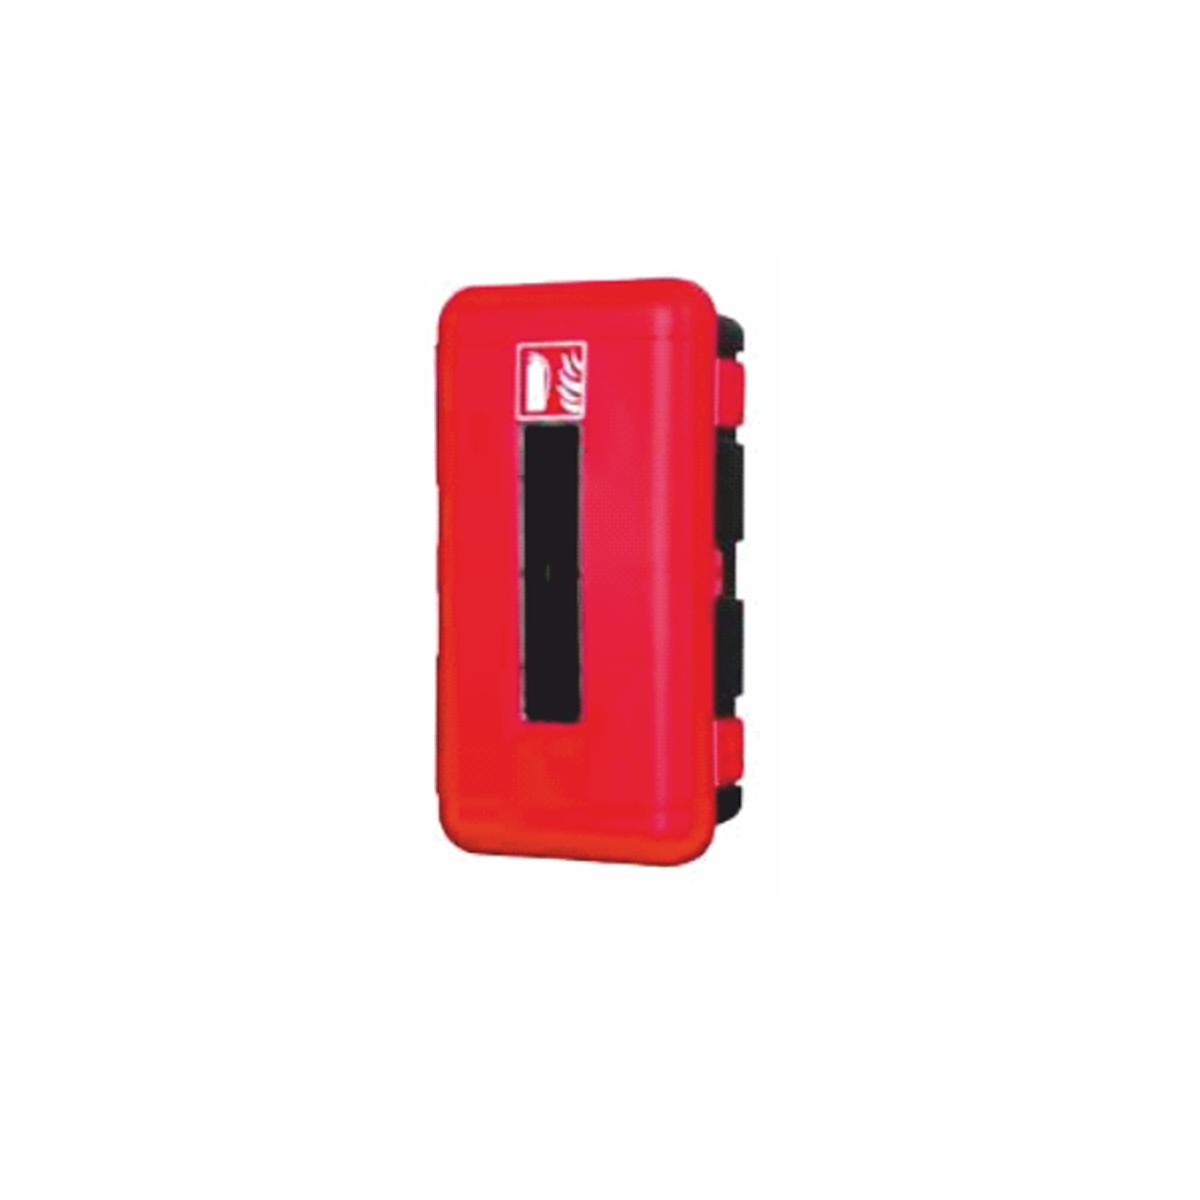 267/3 Caixa PVC Vermelha para Extintor 6KG